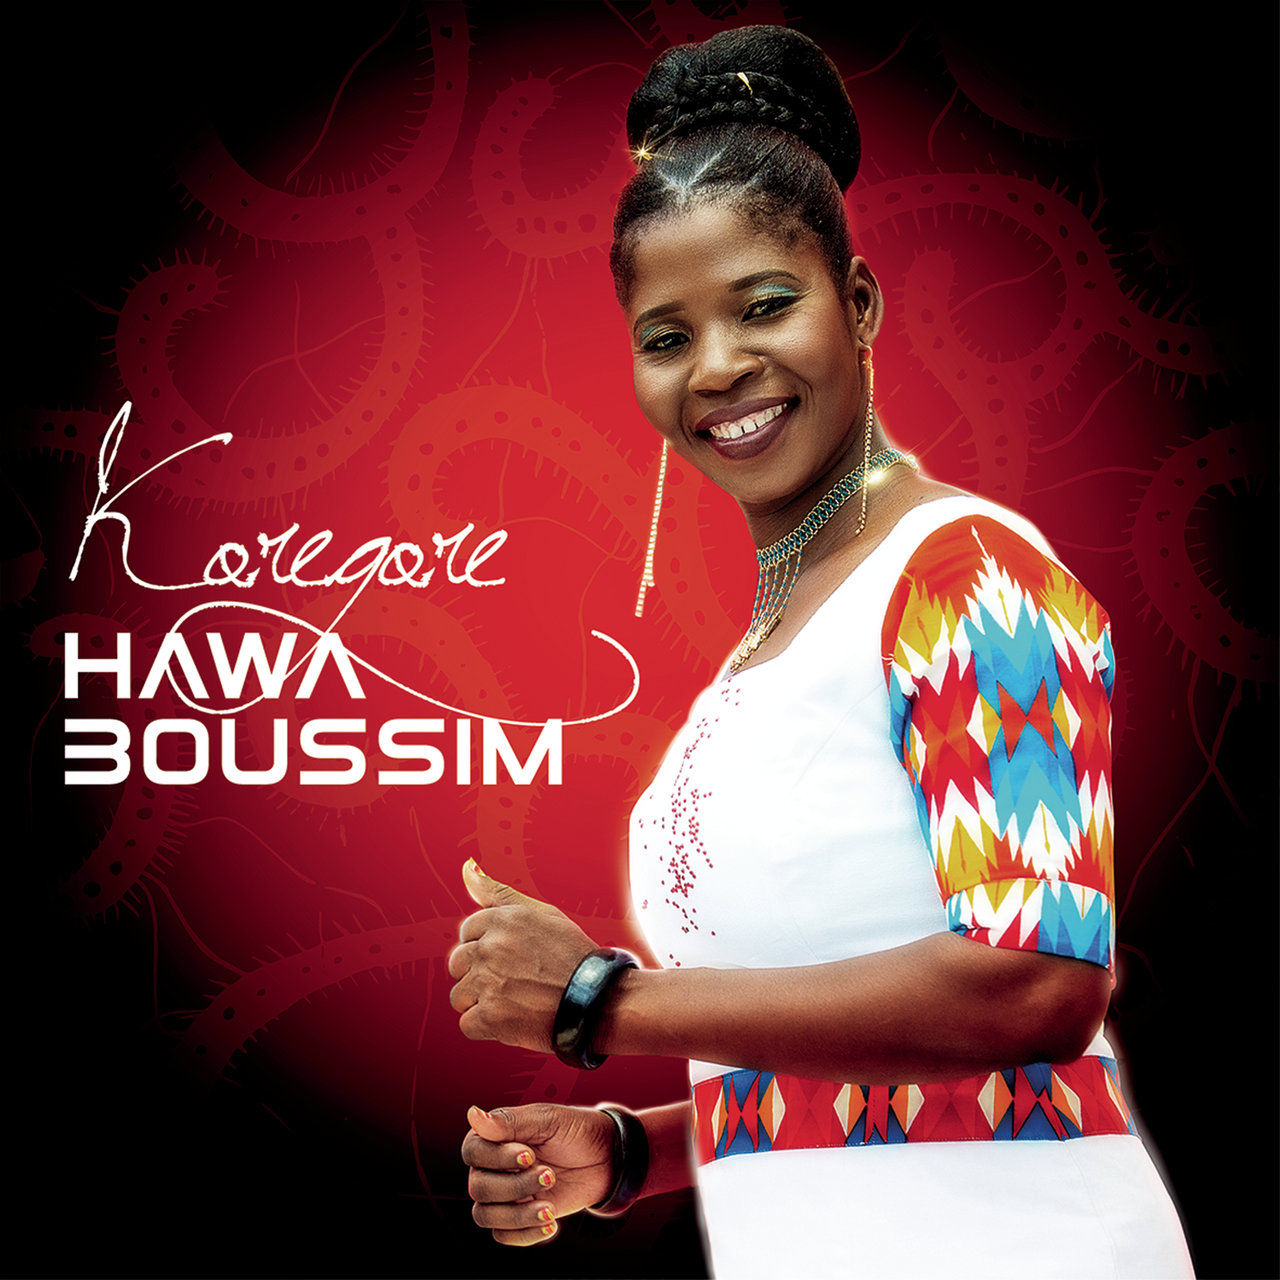 Hawa Boussim — Koregore cover artwork